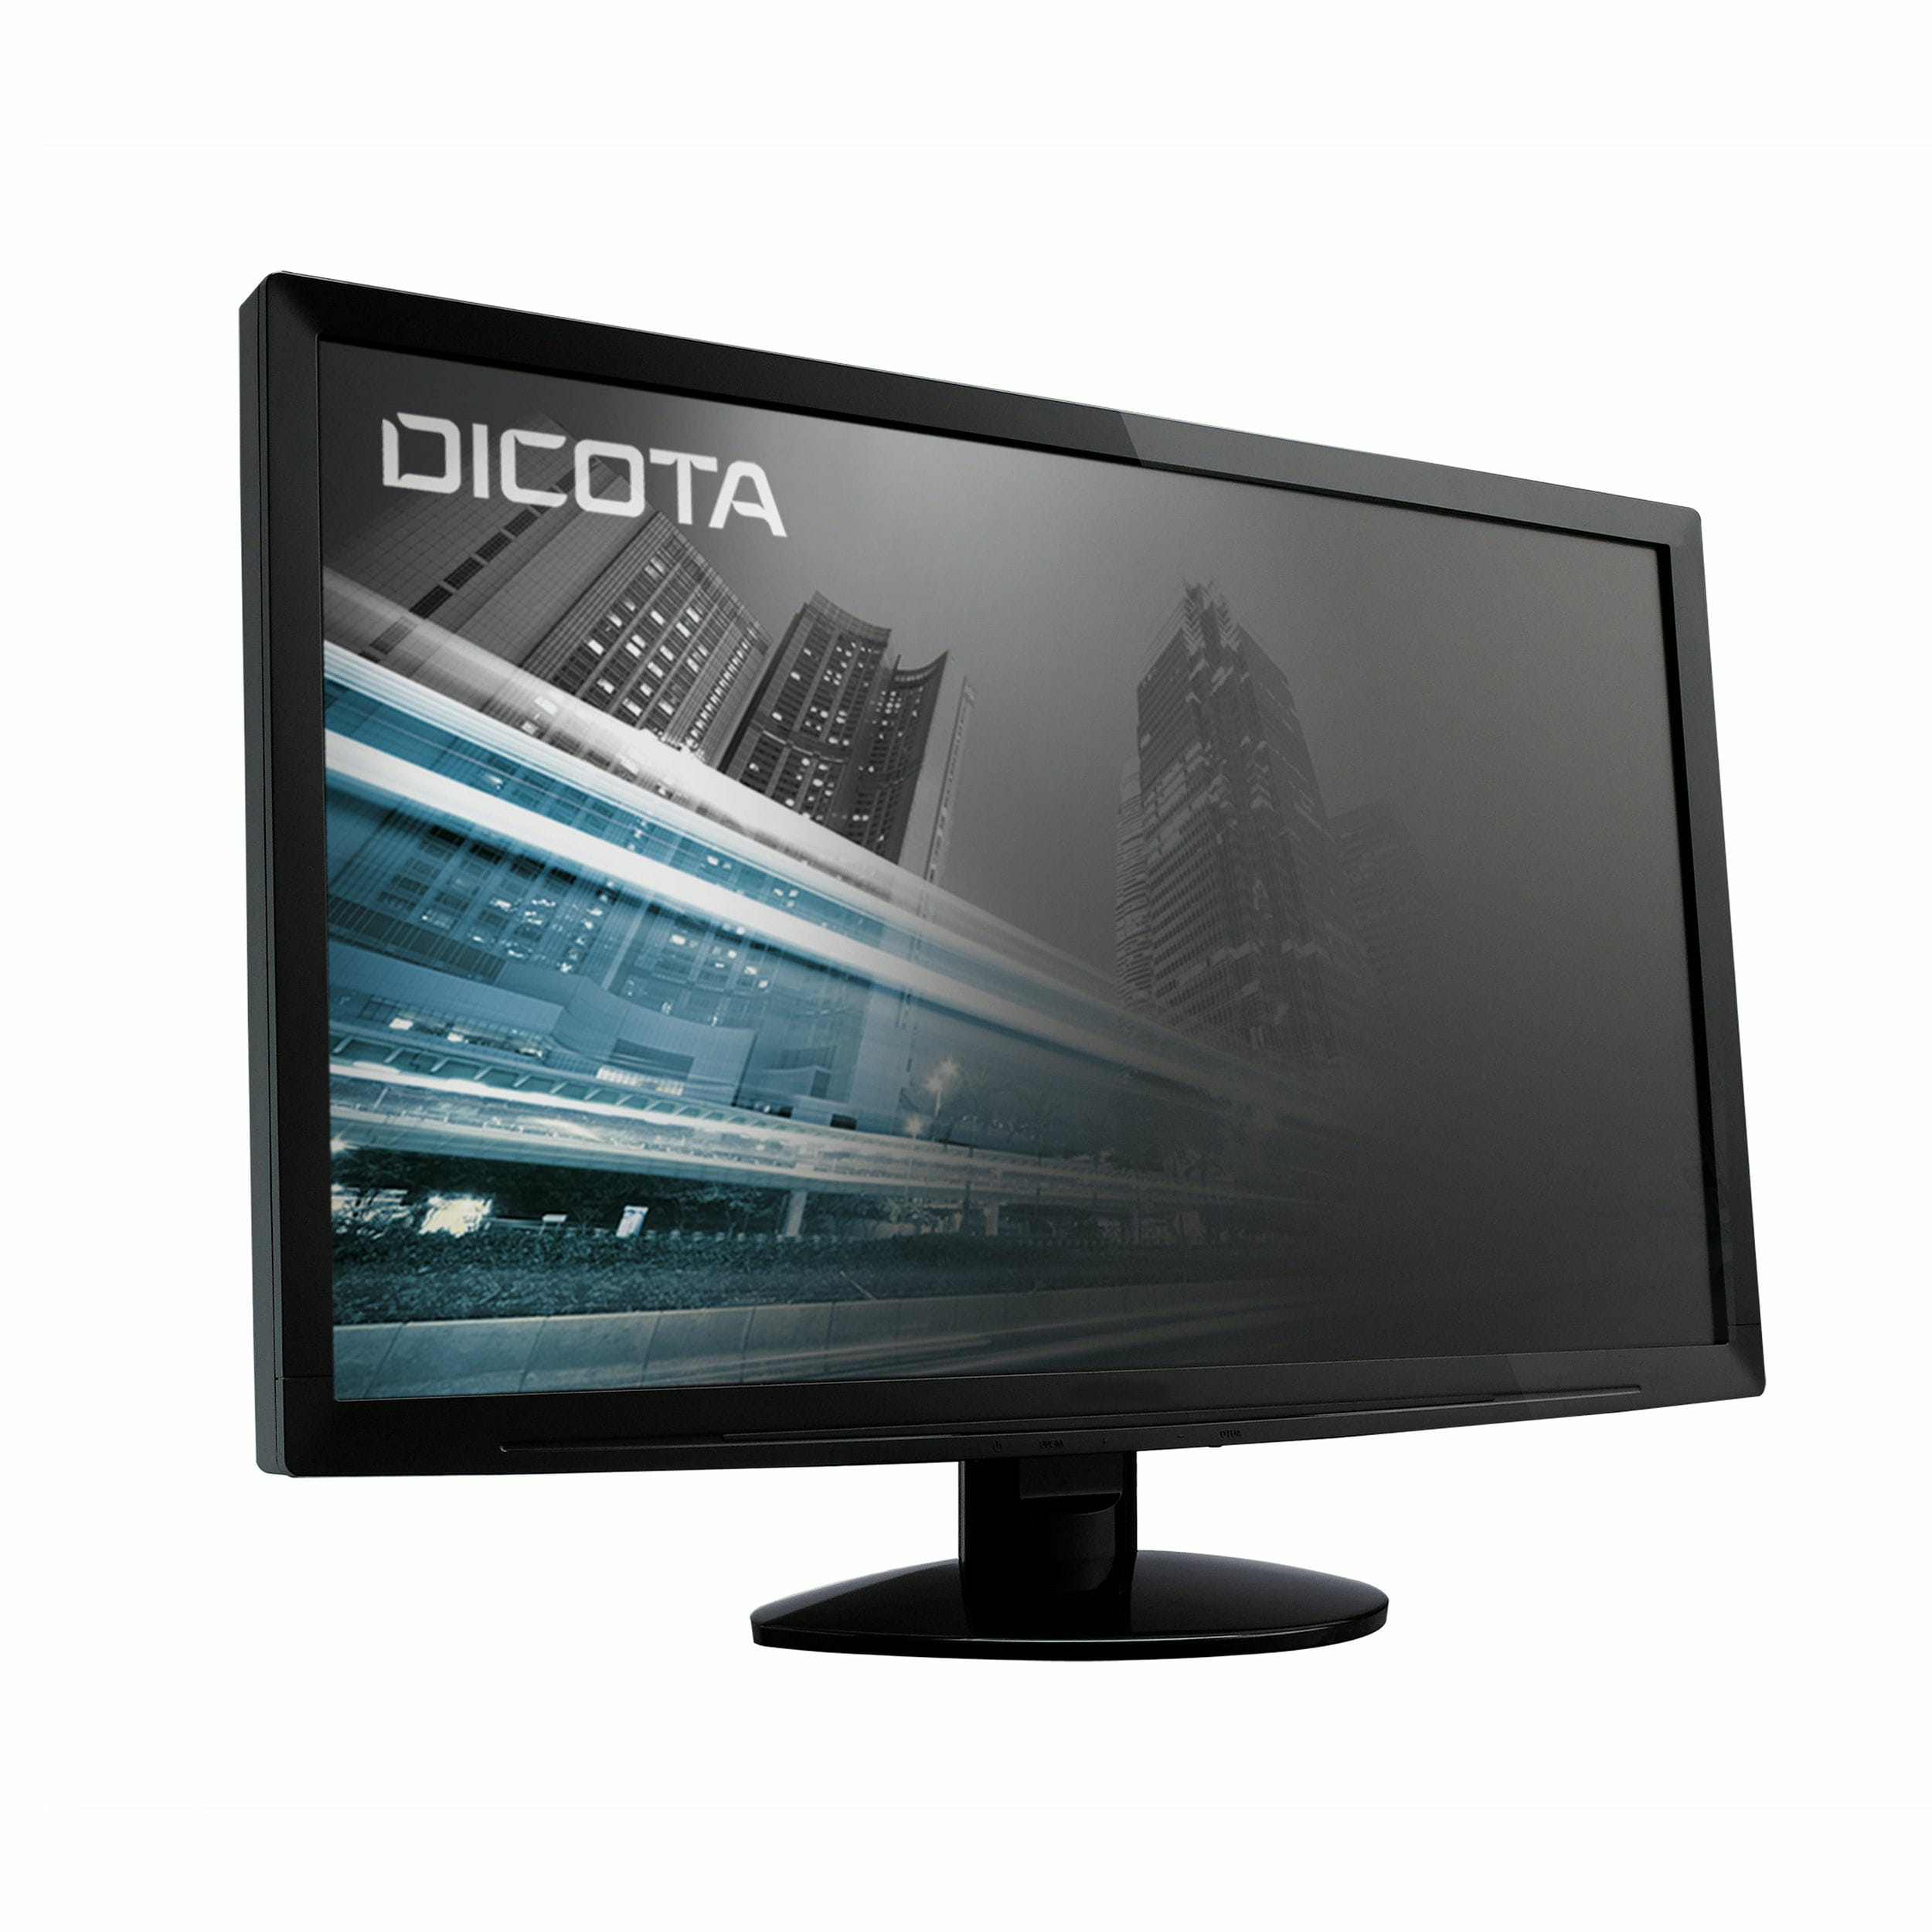 Dicota Blickschutzfilter für Bildschirme - 2-Wege - Halter/Klebepunkte - 61 cm Breitbild (Breitbild mit 24 Zoll)